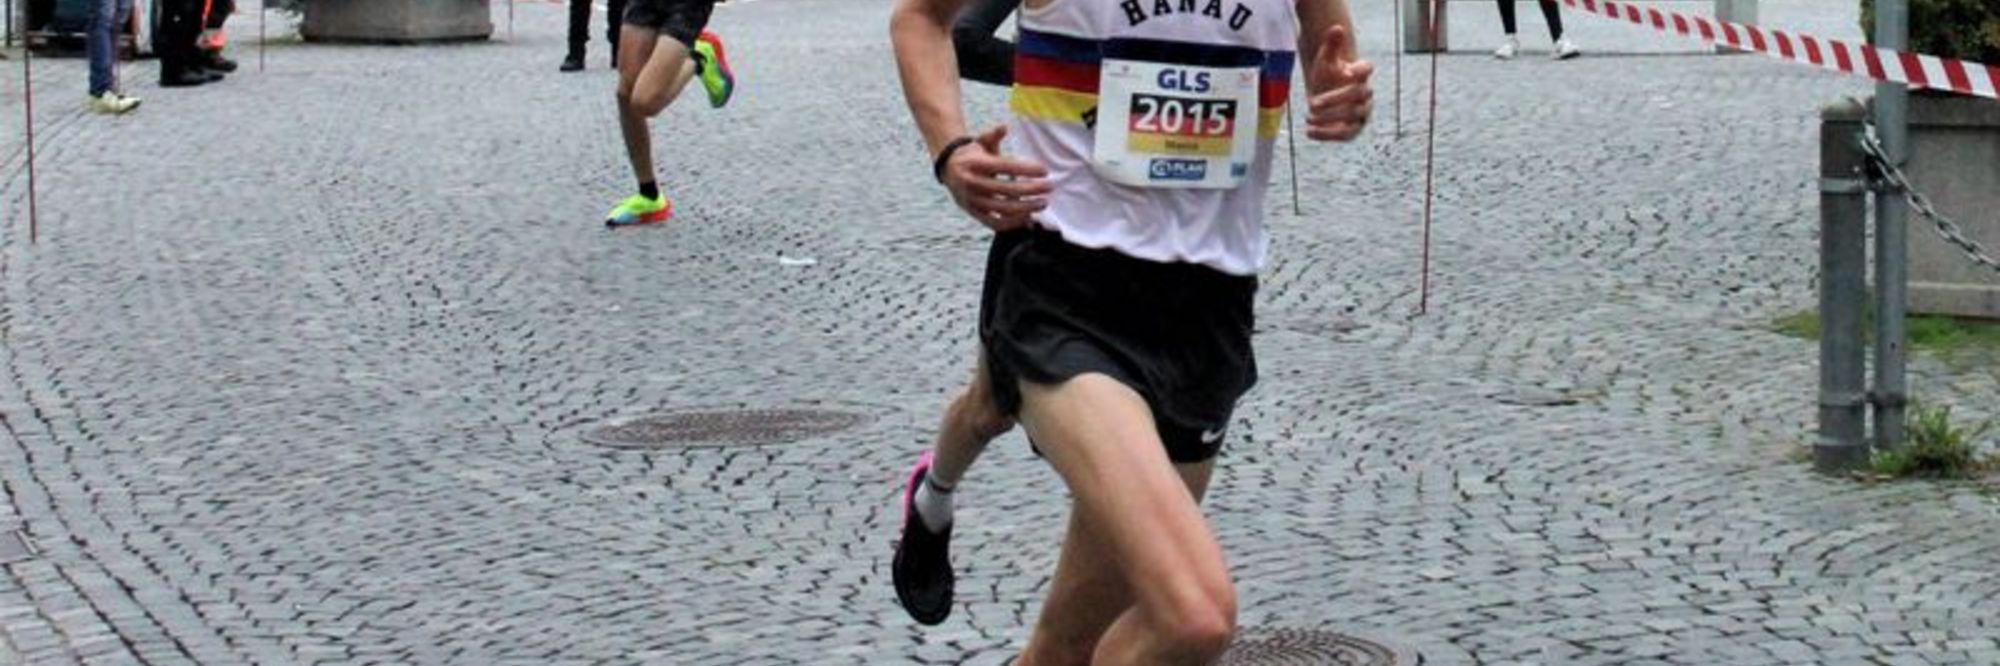 Marius Abele deutscher U23-Halbmarathon-Meister